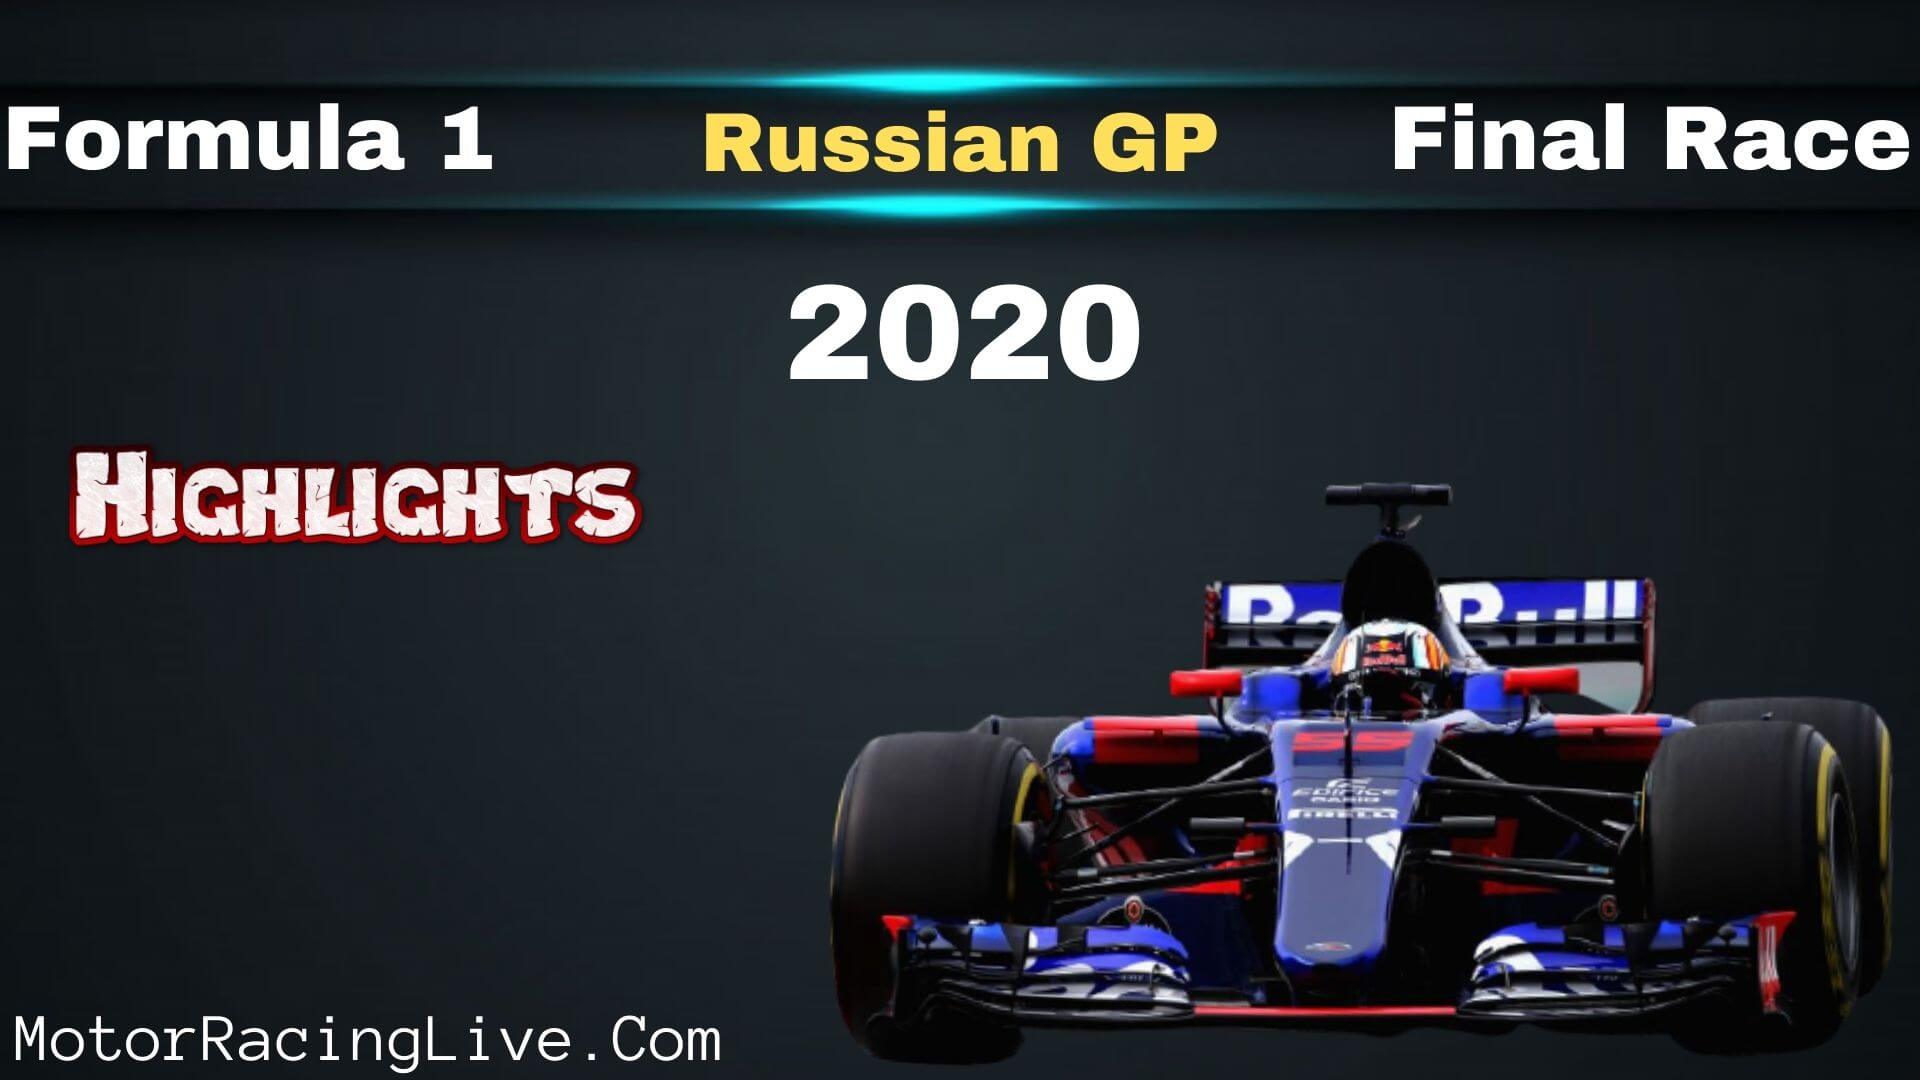 F1 Final Race Russian GP Race 2020 Highlights